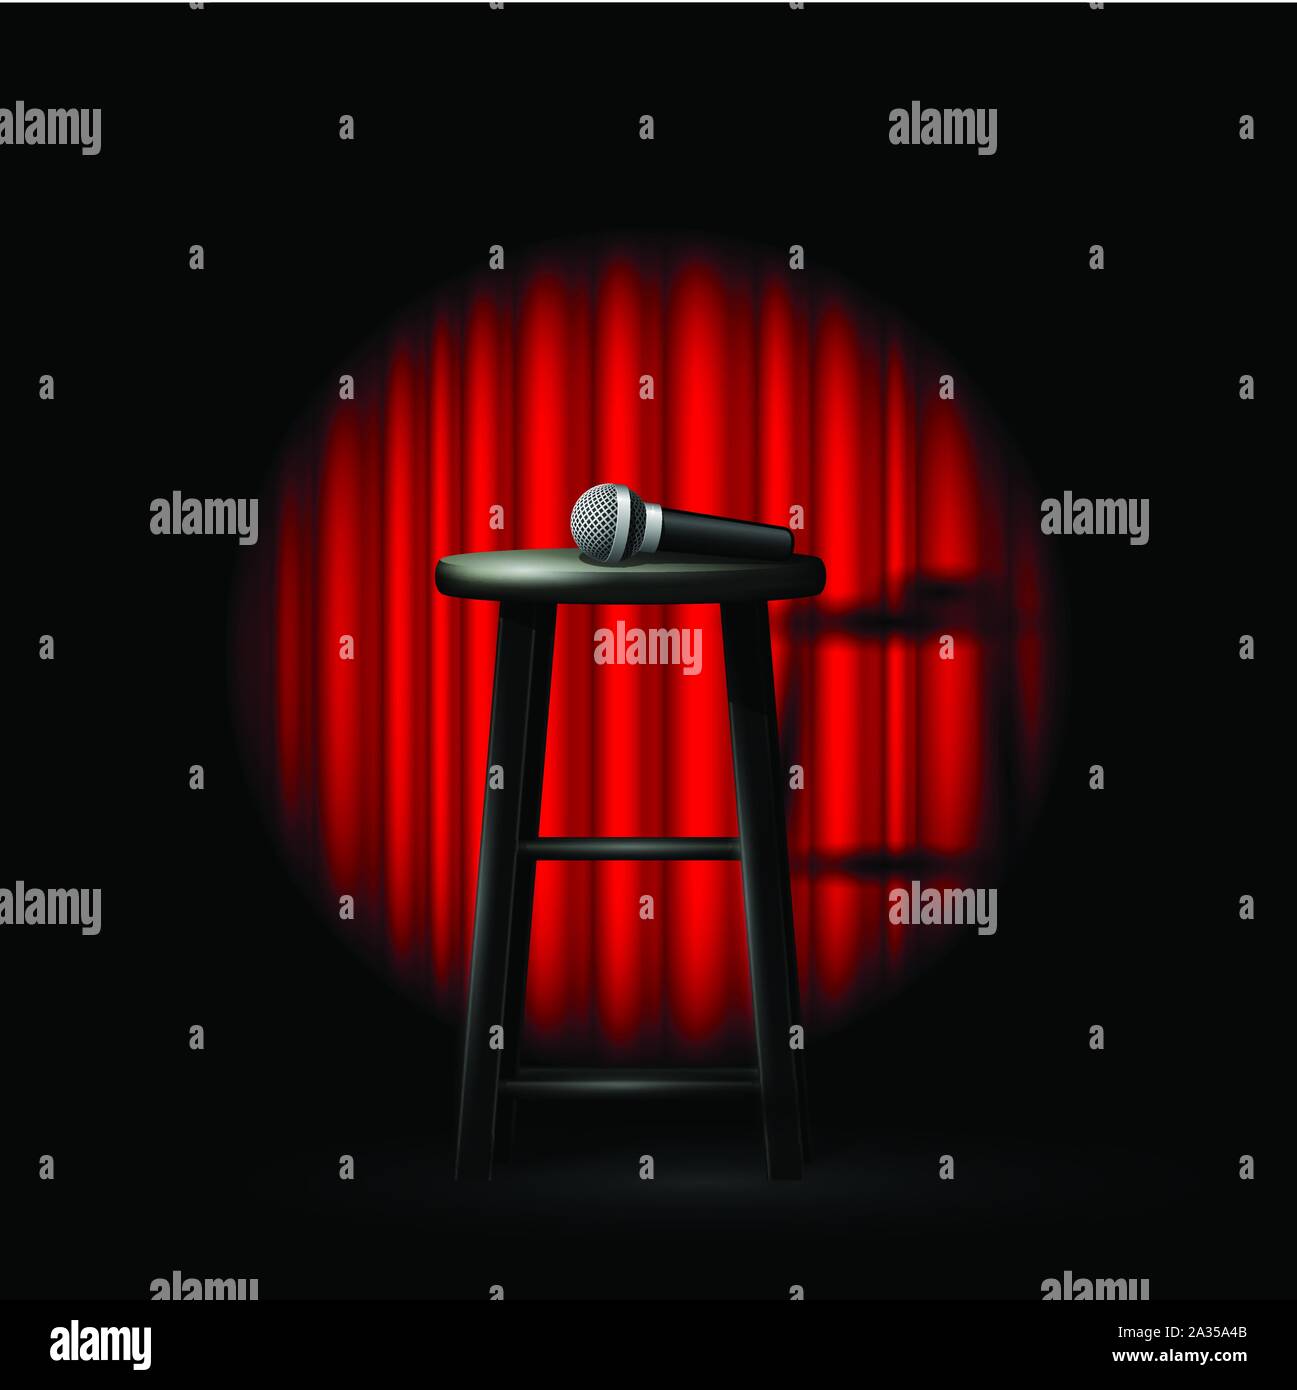 Stand Up Comedy Show - microphone et selles dans un rayon de lumière et rideau d'abandon Illustration de Vecteur